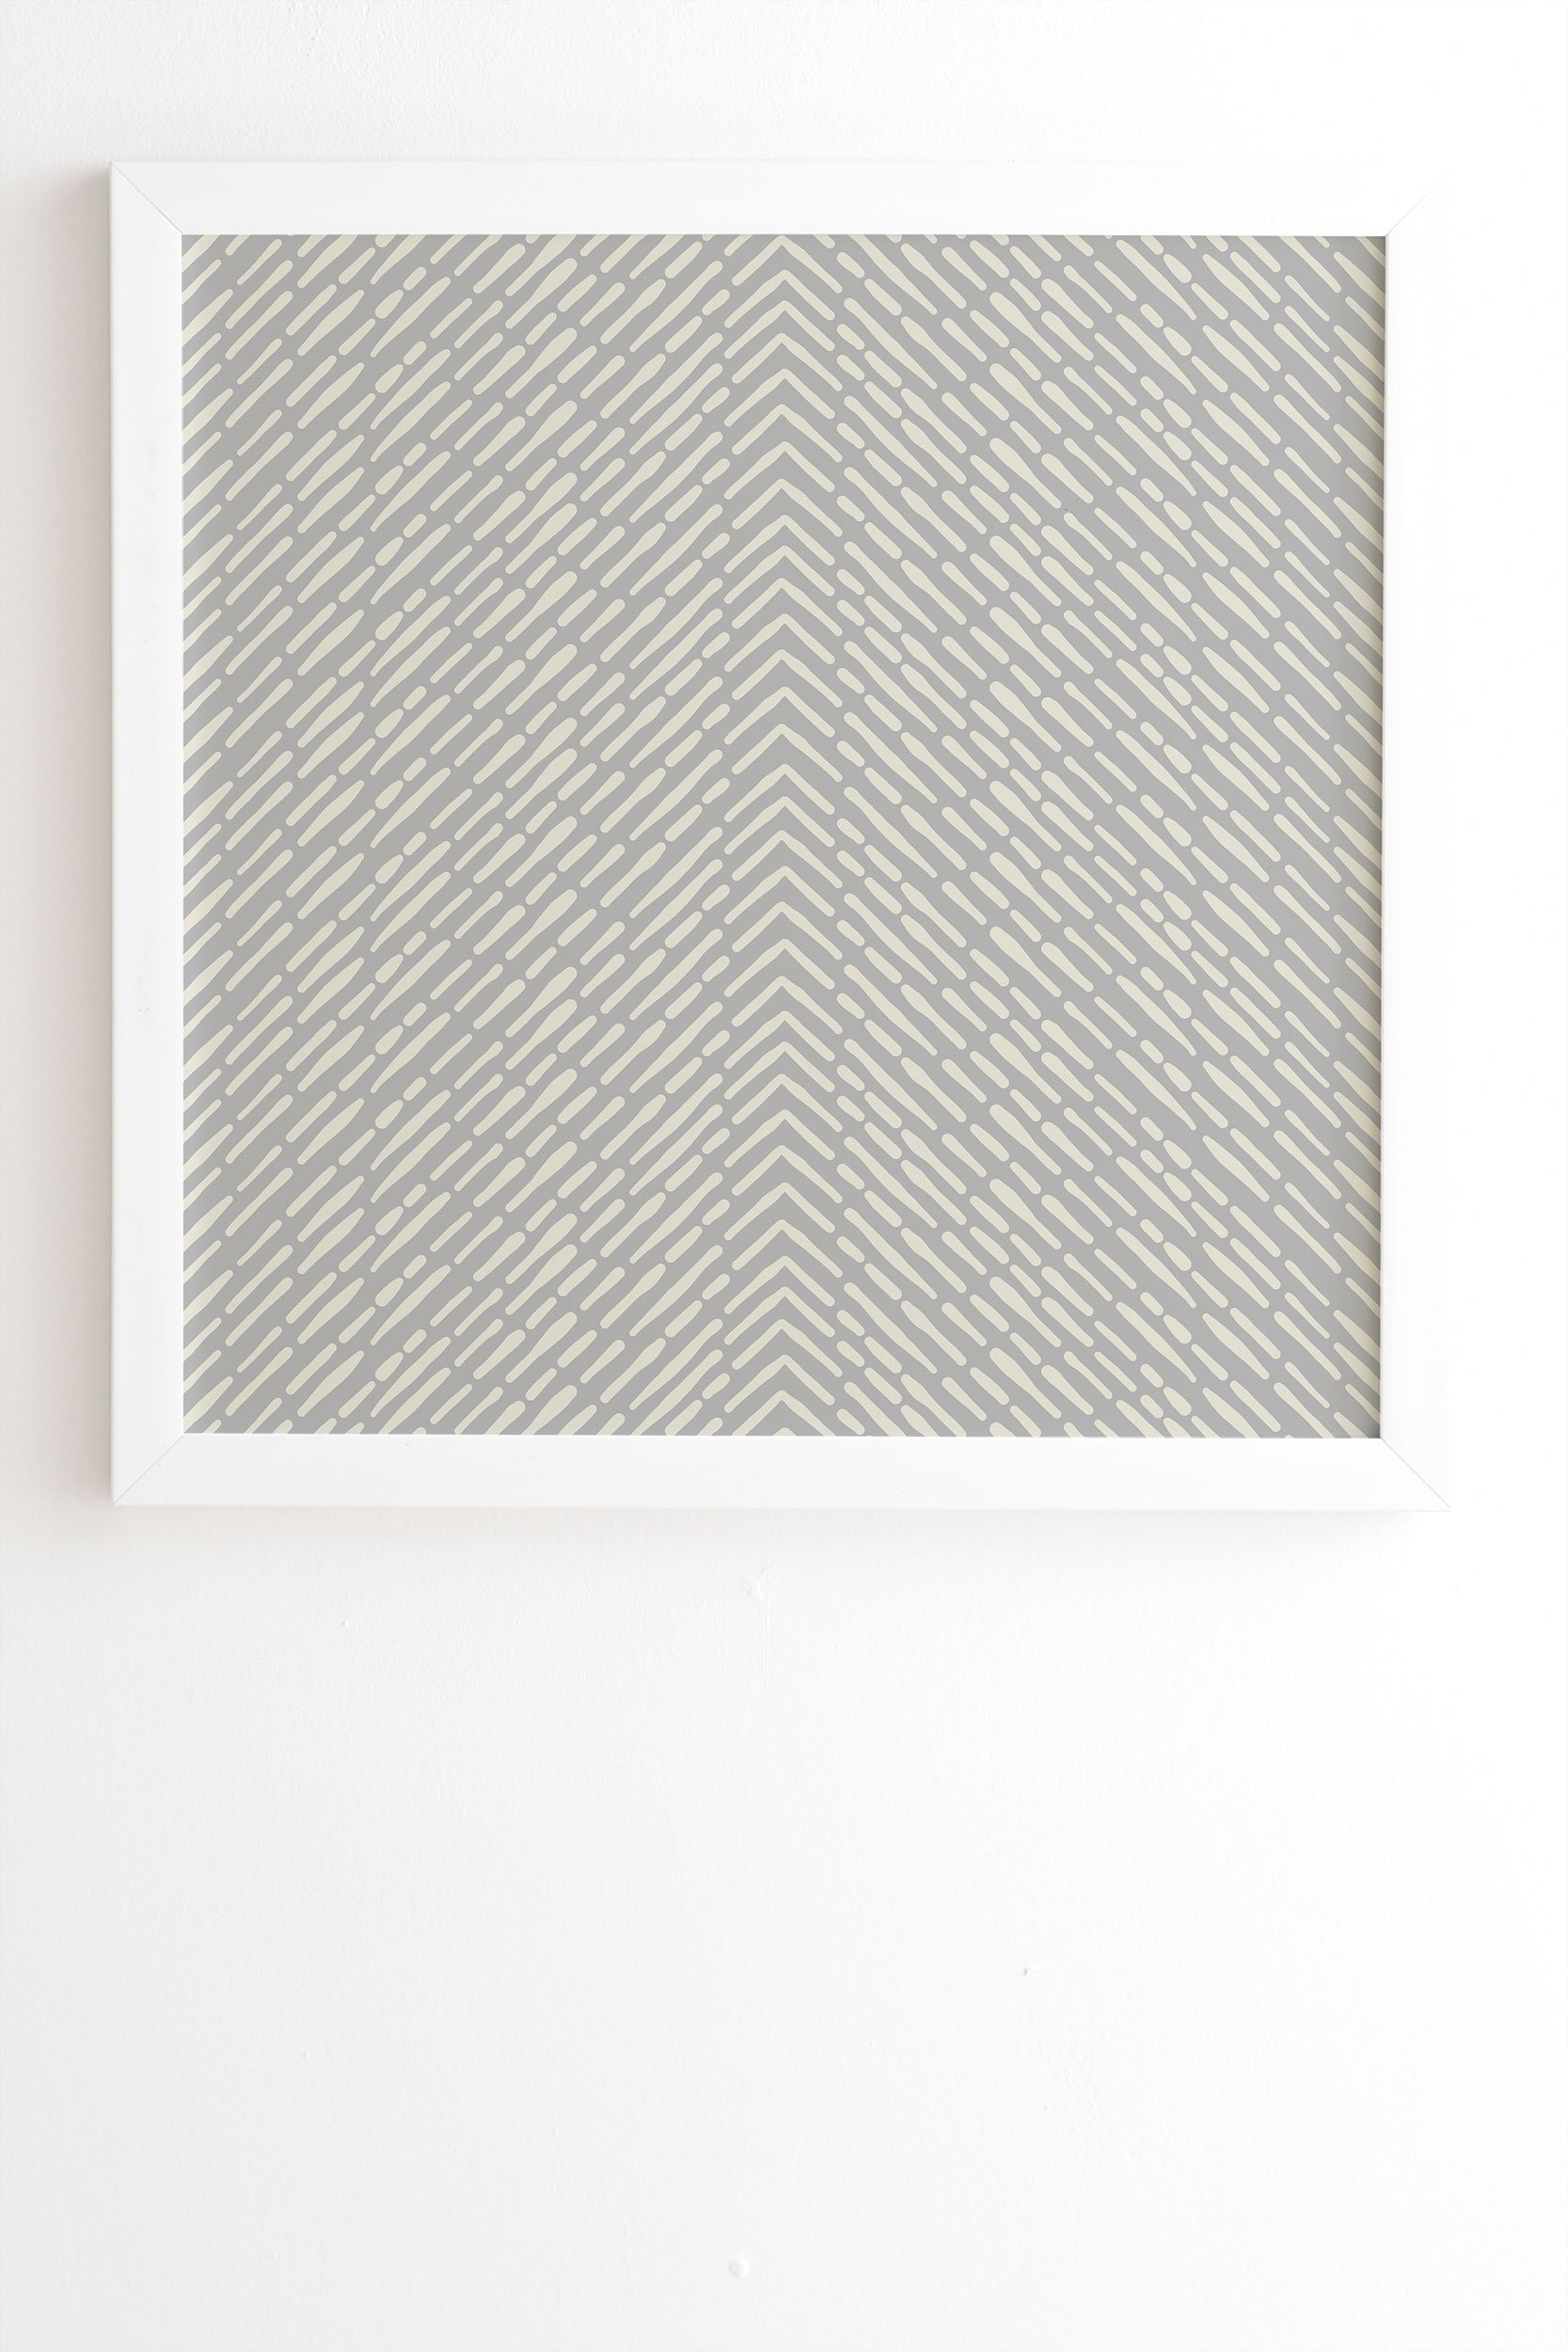 Iveta Abolina Roux Gray White Framed Wall Art - 30" x 30" - Image 1